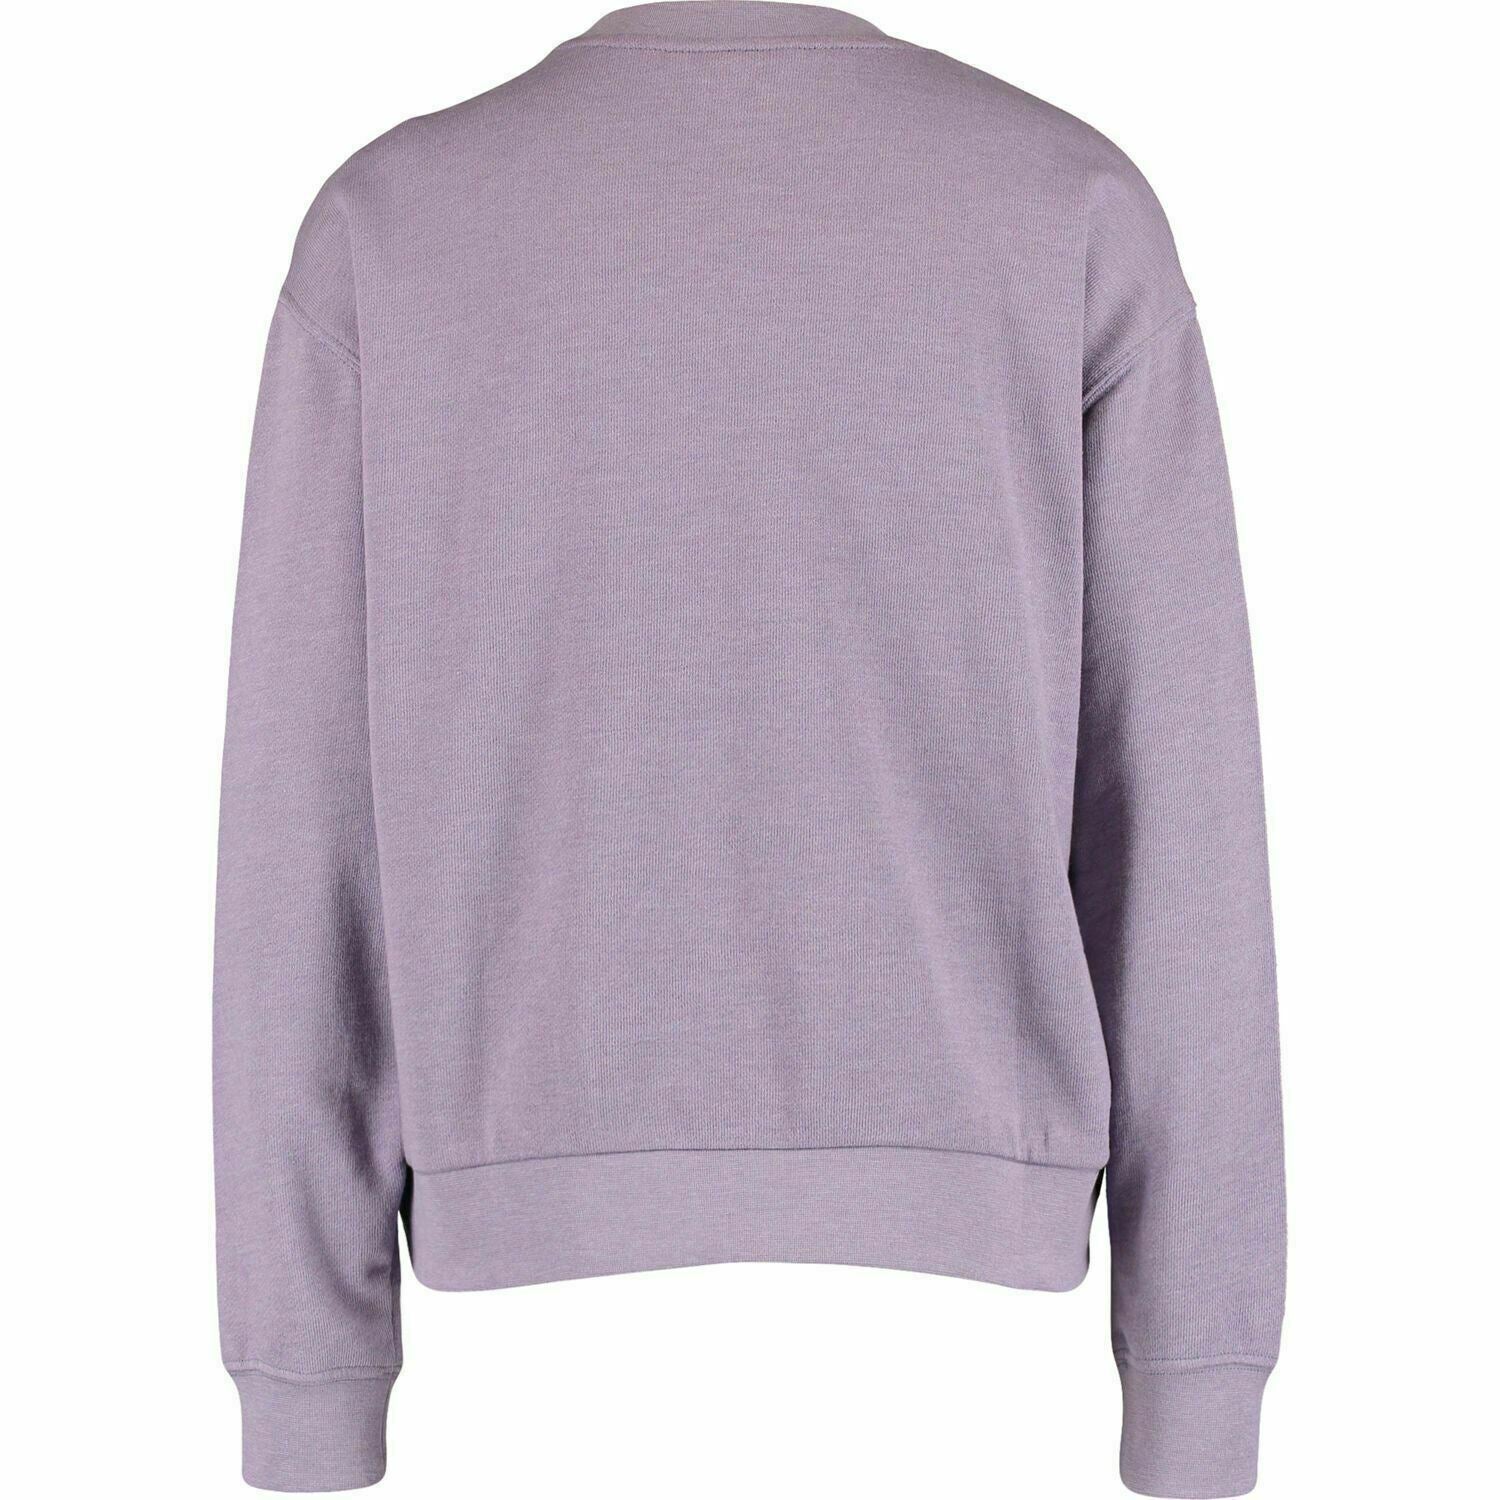 LEE Women's MELEE Relaxed Fit Sweatshirt, Lavender Dusk Purple, size XS